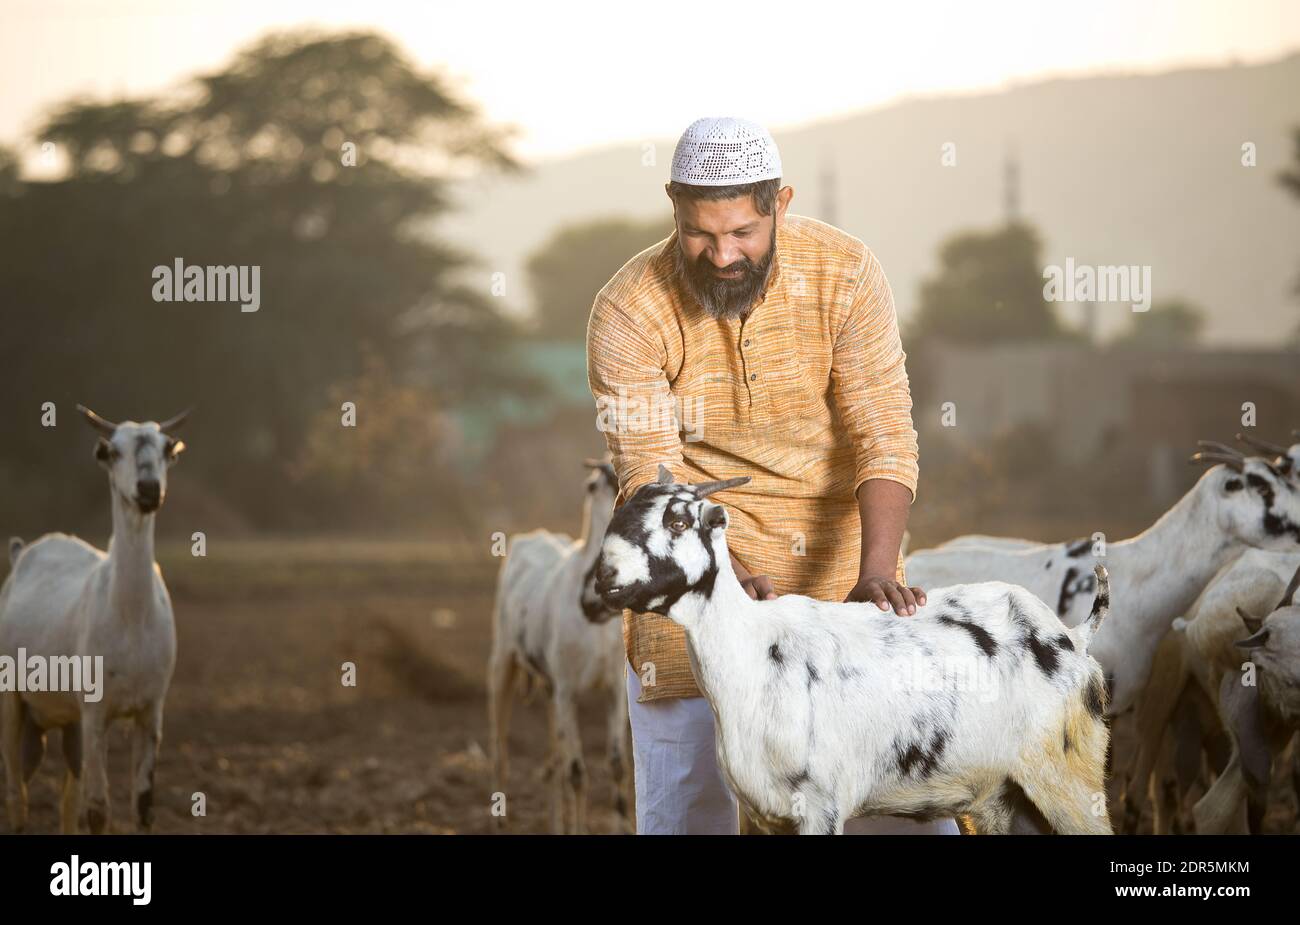 muslim goats humping